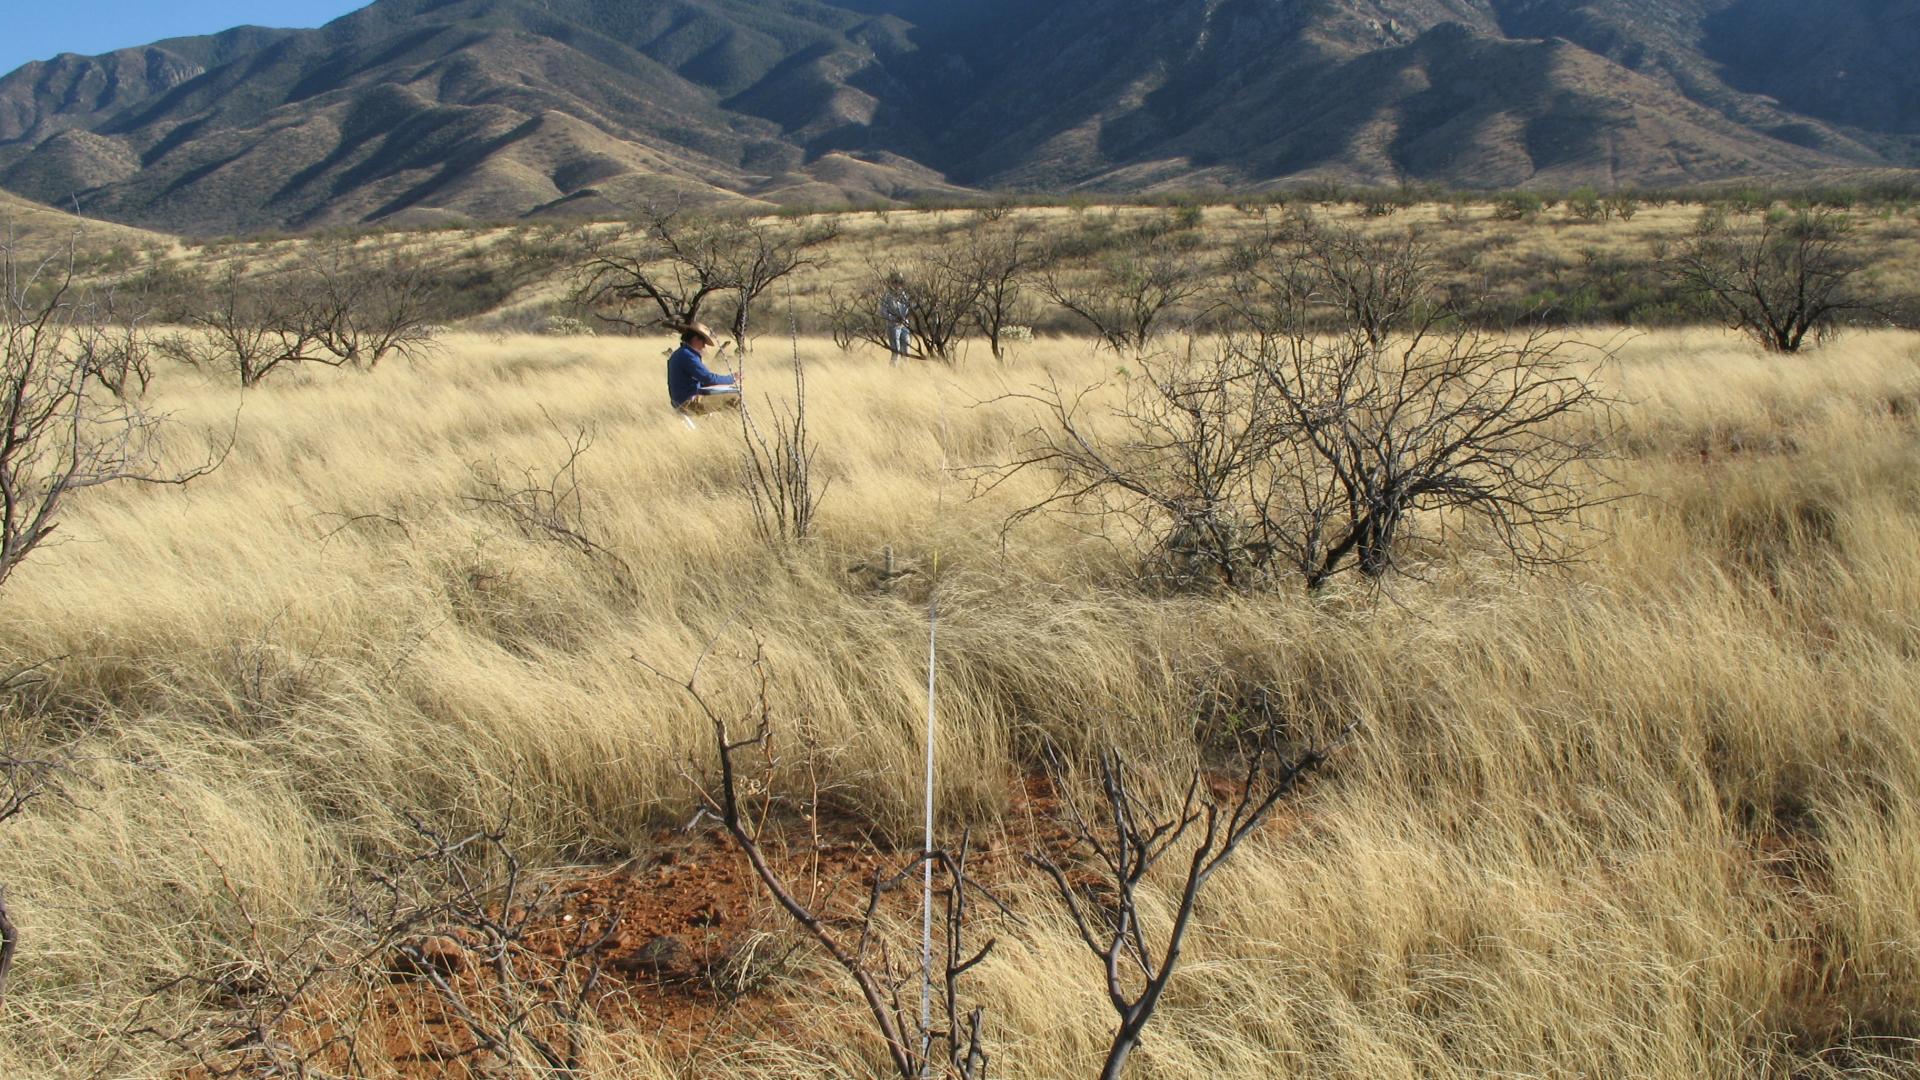 Monitoring at Santa Rita Experimental Range